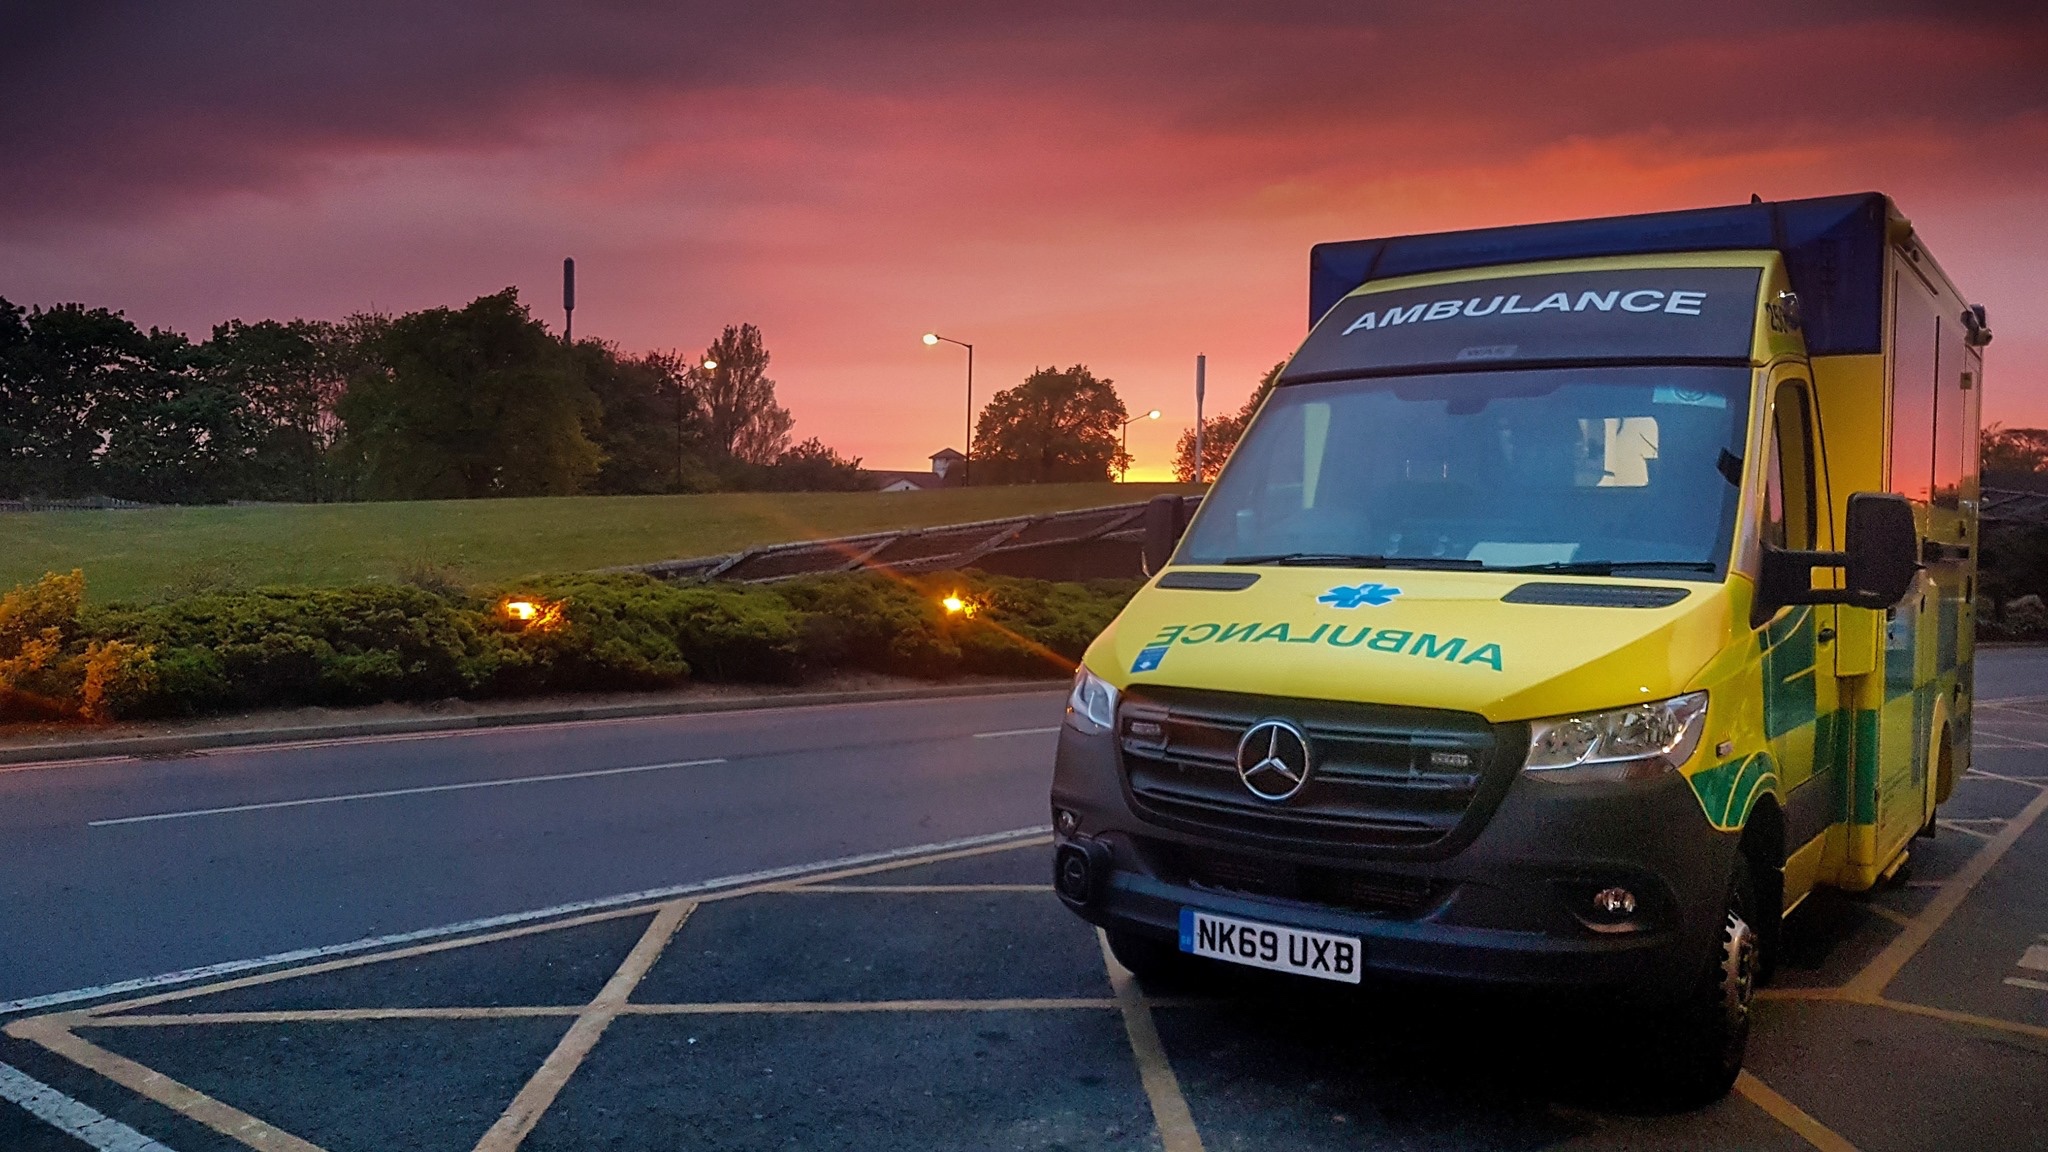 Ambulance with Sunset Background